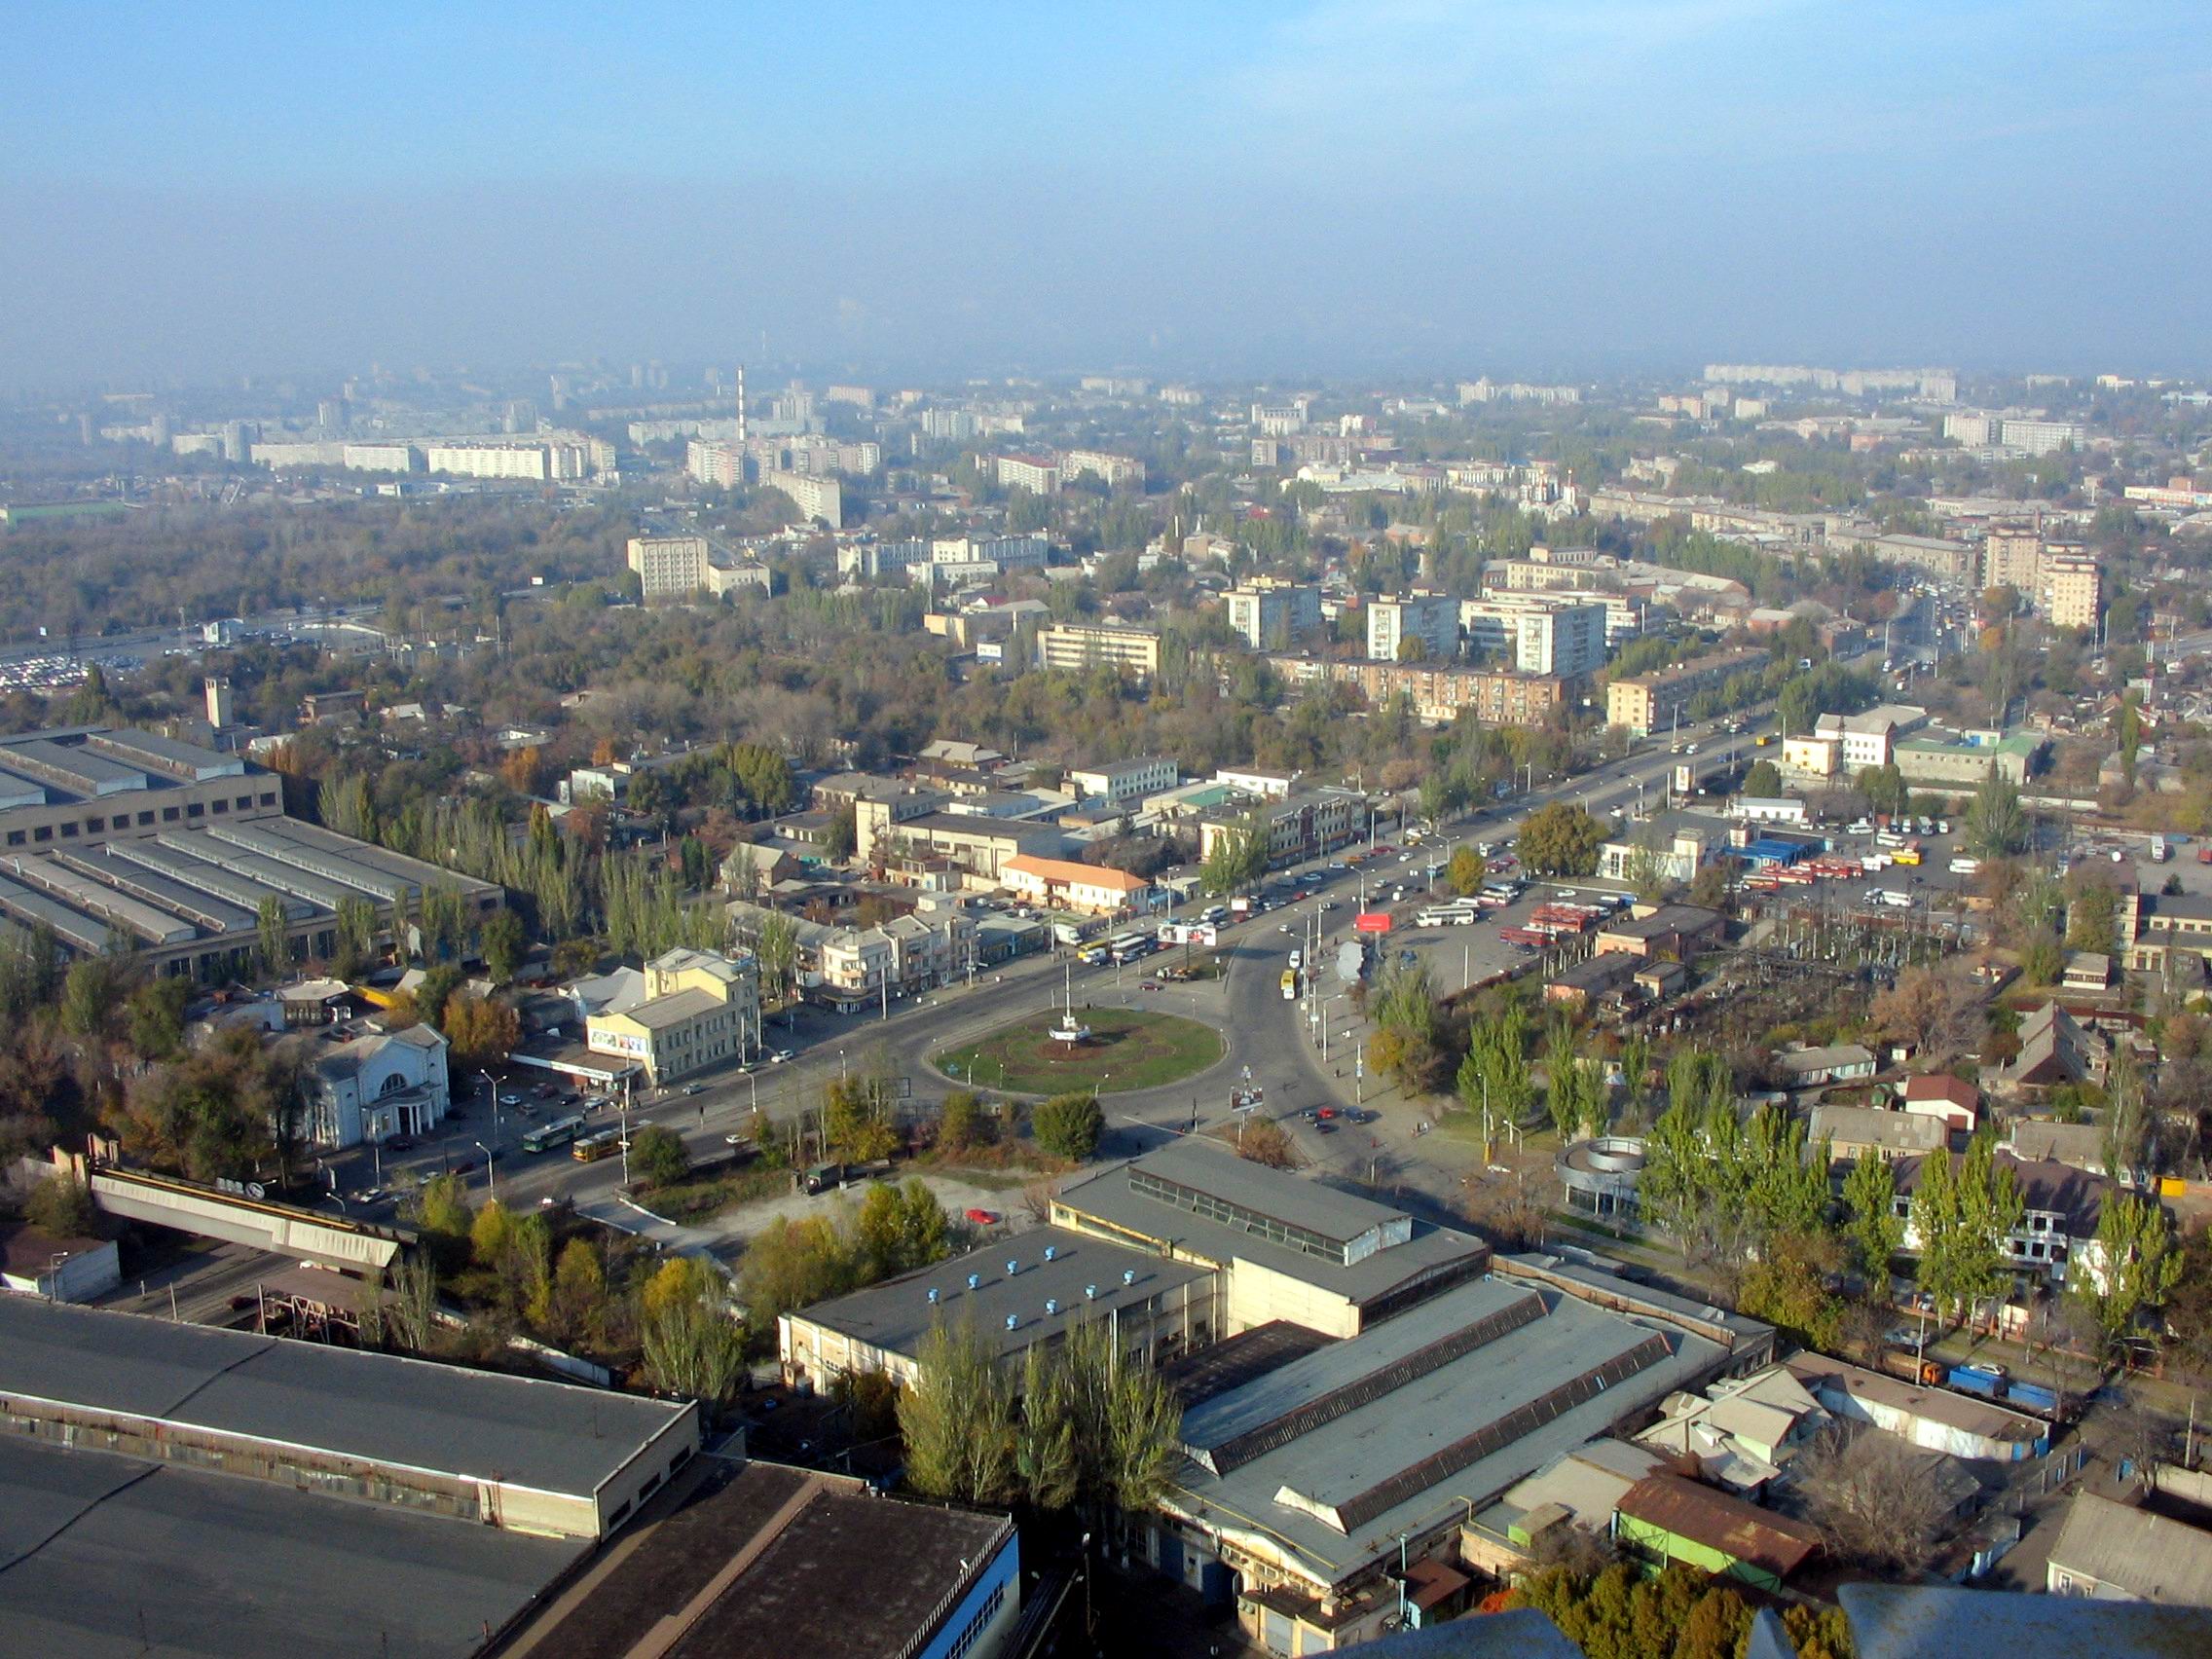 Запорожская область города